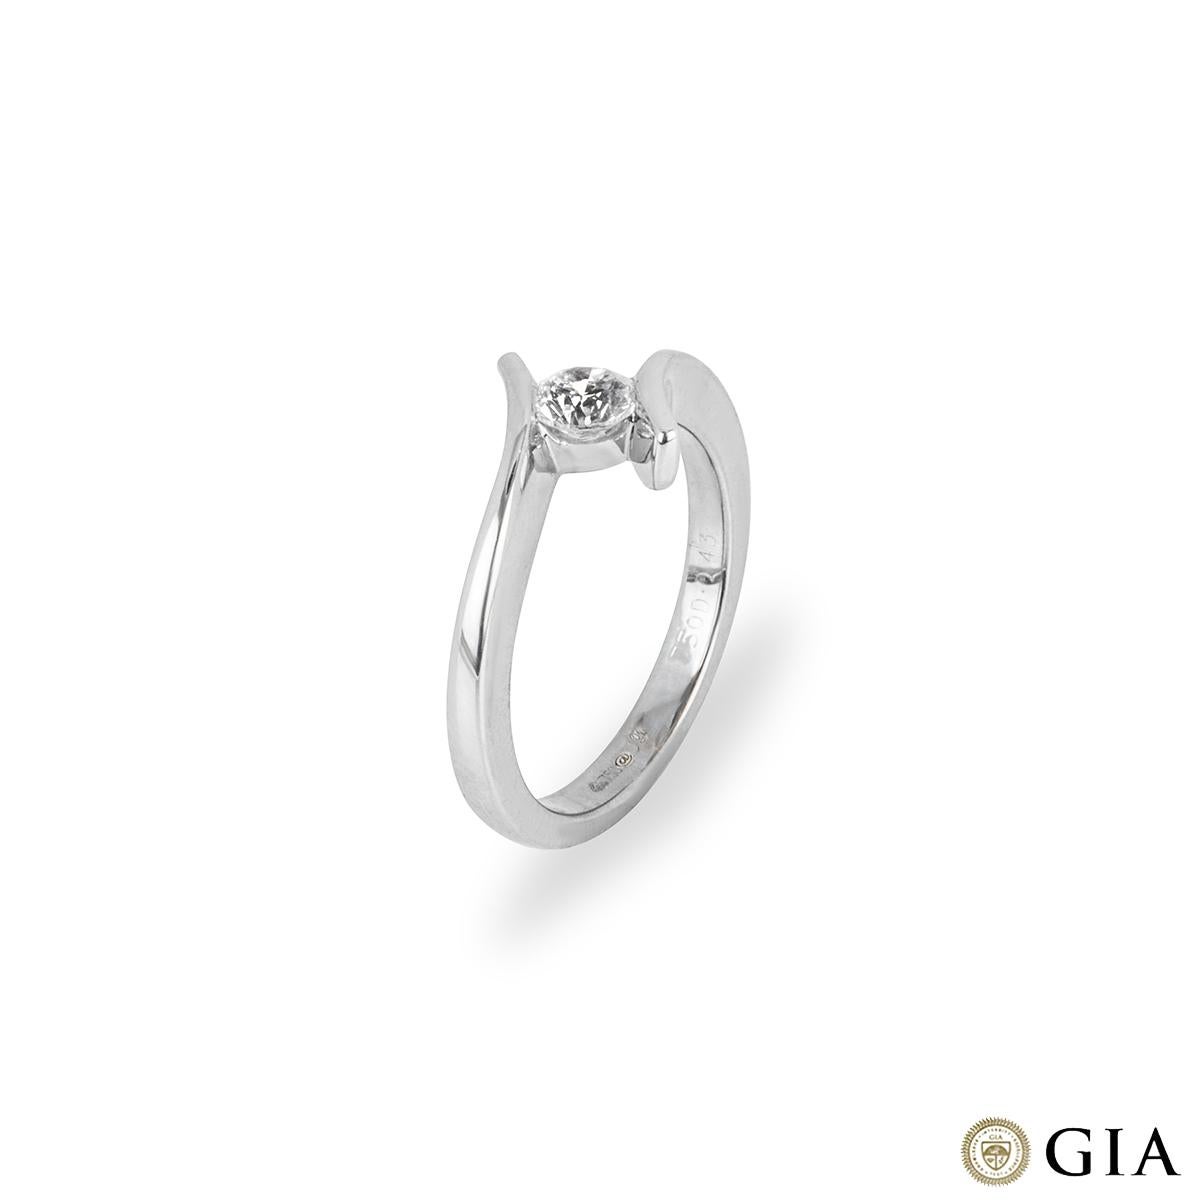 Ein eleganter Ring aus 18 Karat Weißgold mit einem einzigen Stein. Der Ring verfügt über ein modernes Twist-Design, das den Diamanten in einer Kanalfassung hält. Der runde Diamant im Brillantschliff wiegt 0,43 ct, hat die Farbe F und die Reinheit